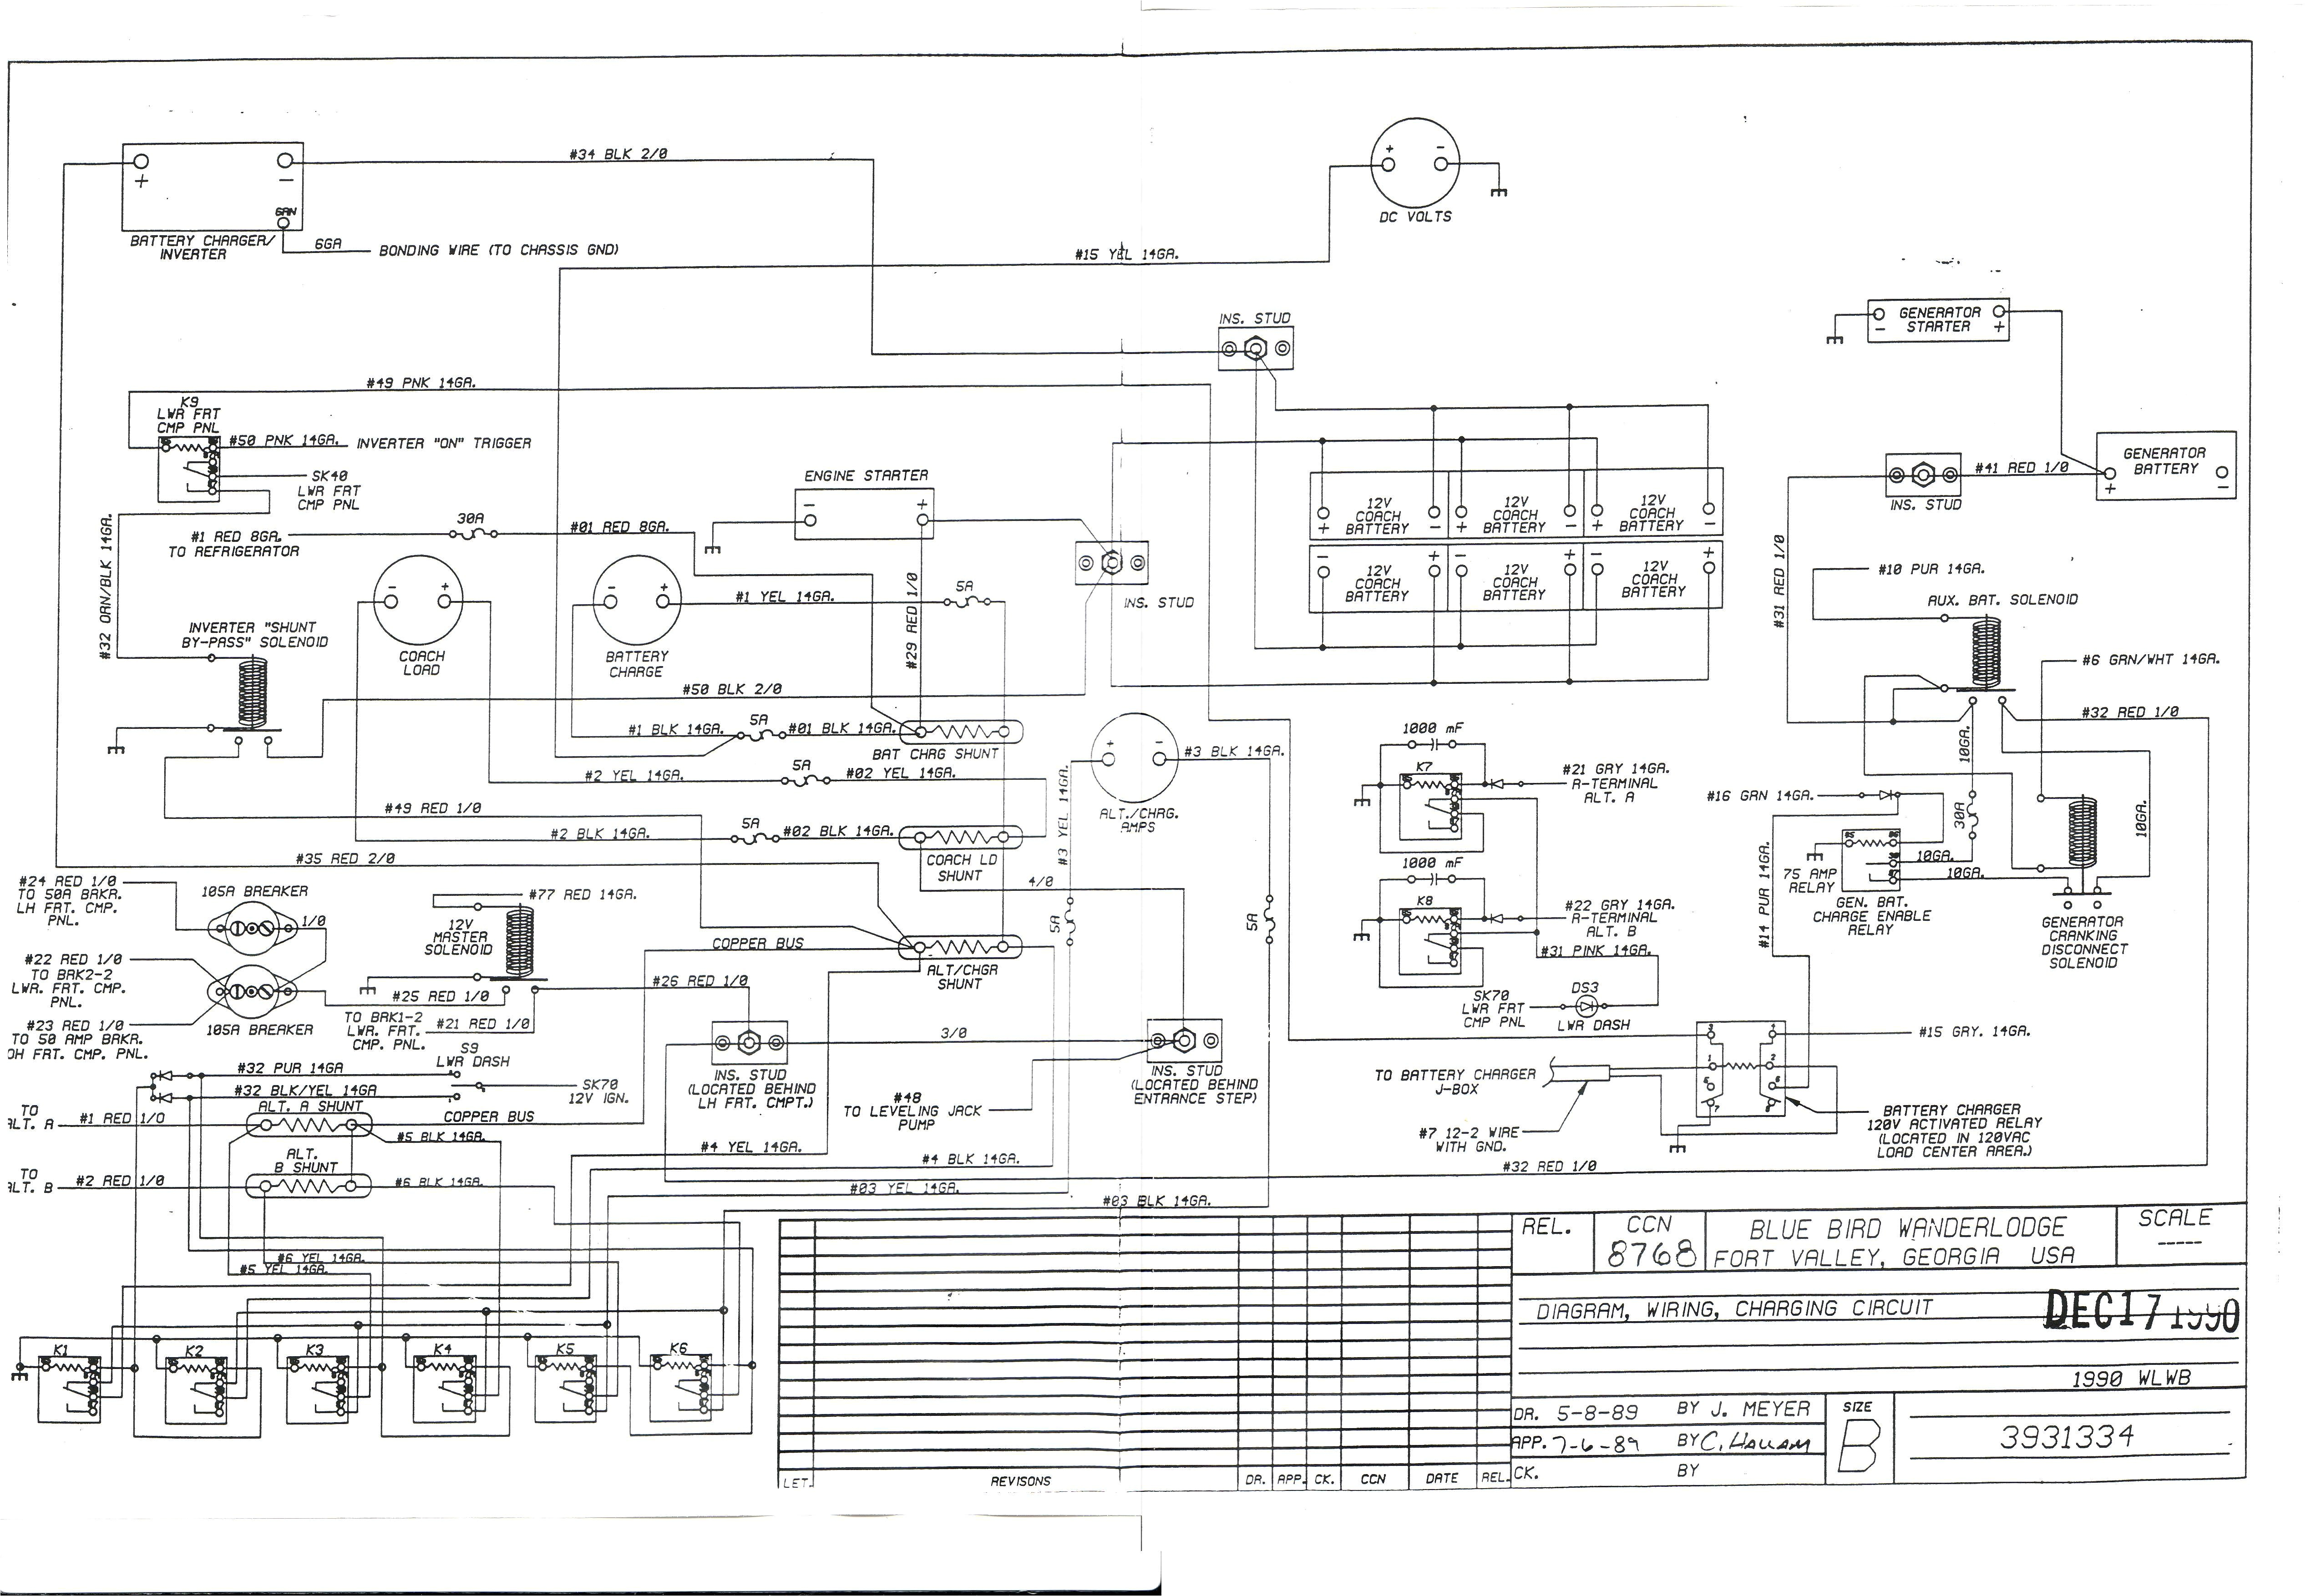 bluebird wiring diagram wiring diagram name 910 bluebird wiring diagram